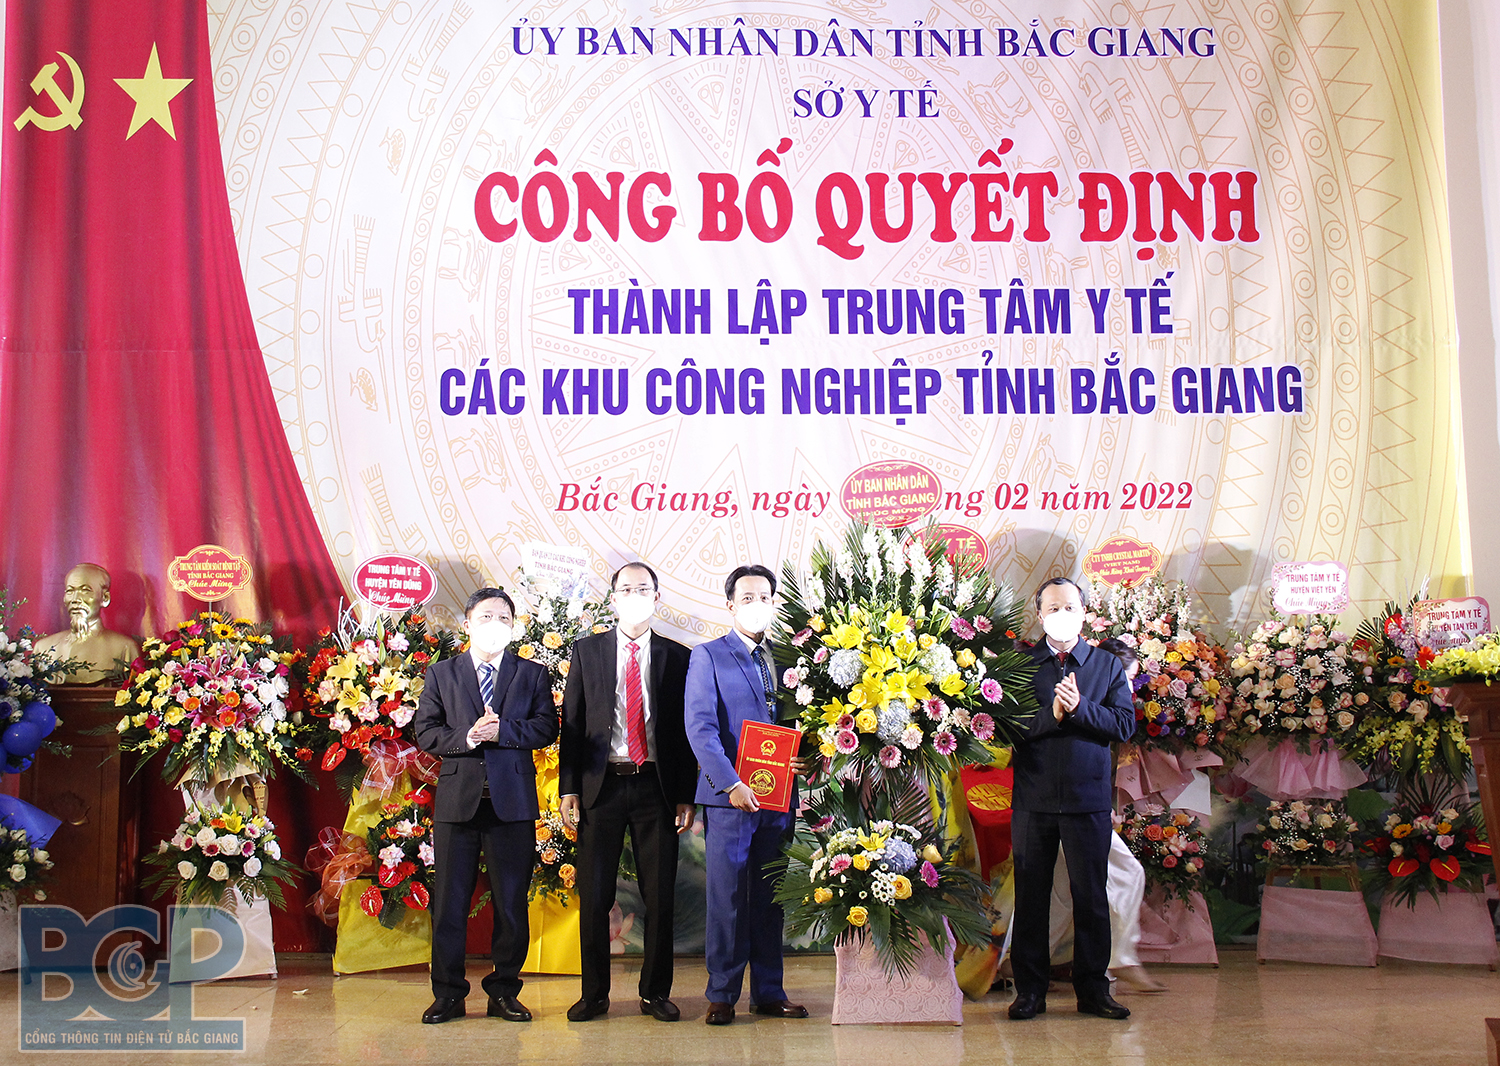 Bắc Giang: Công bố quyết định thành lập Trung tâm Y tế các khu công nghiệp tỉnh